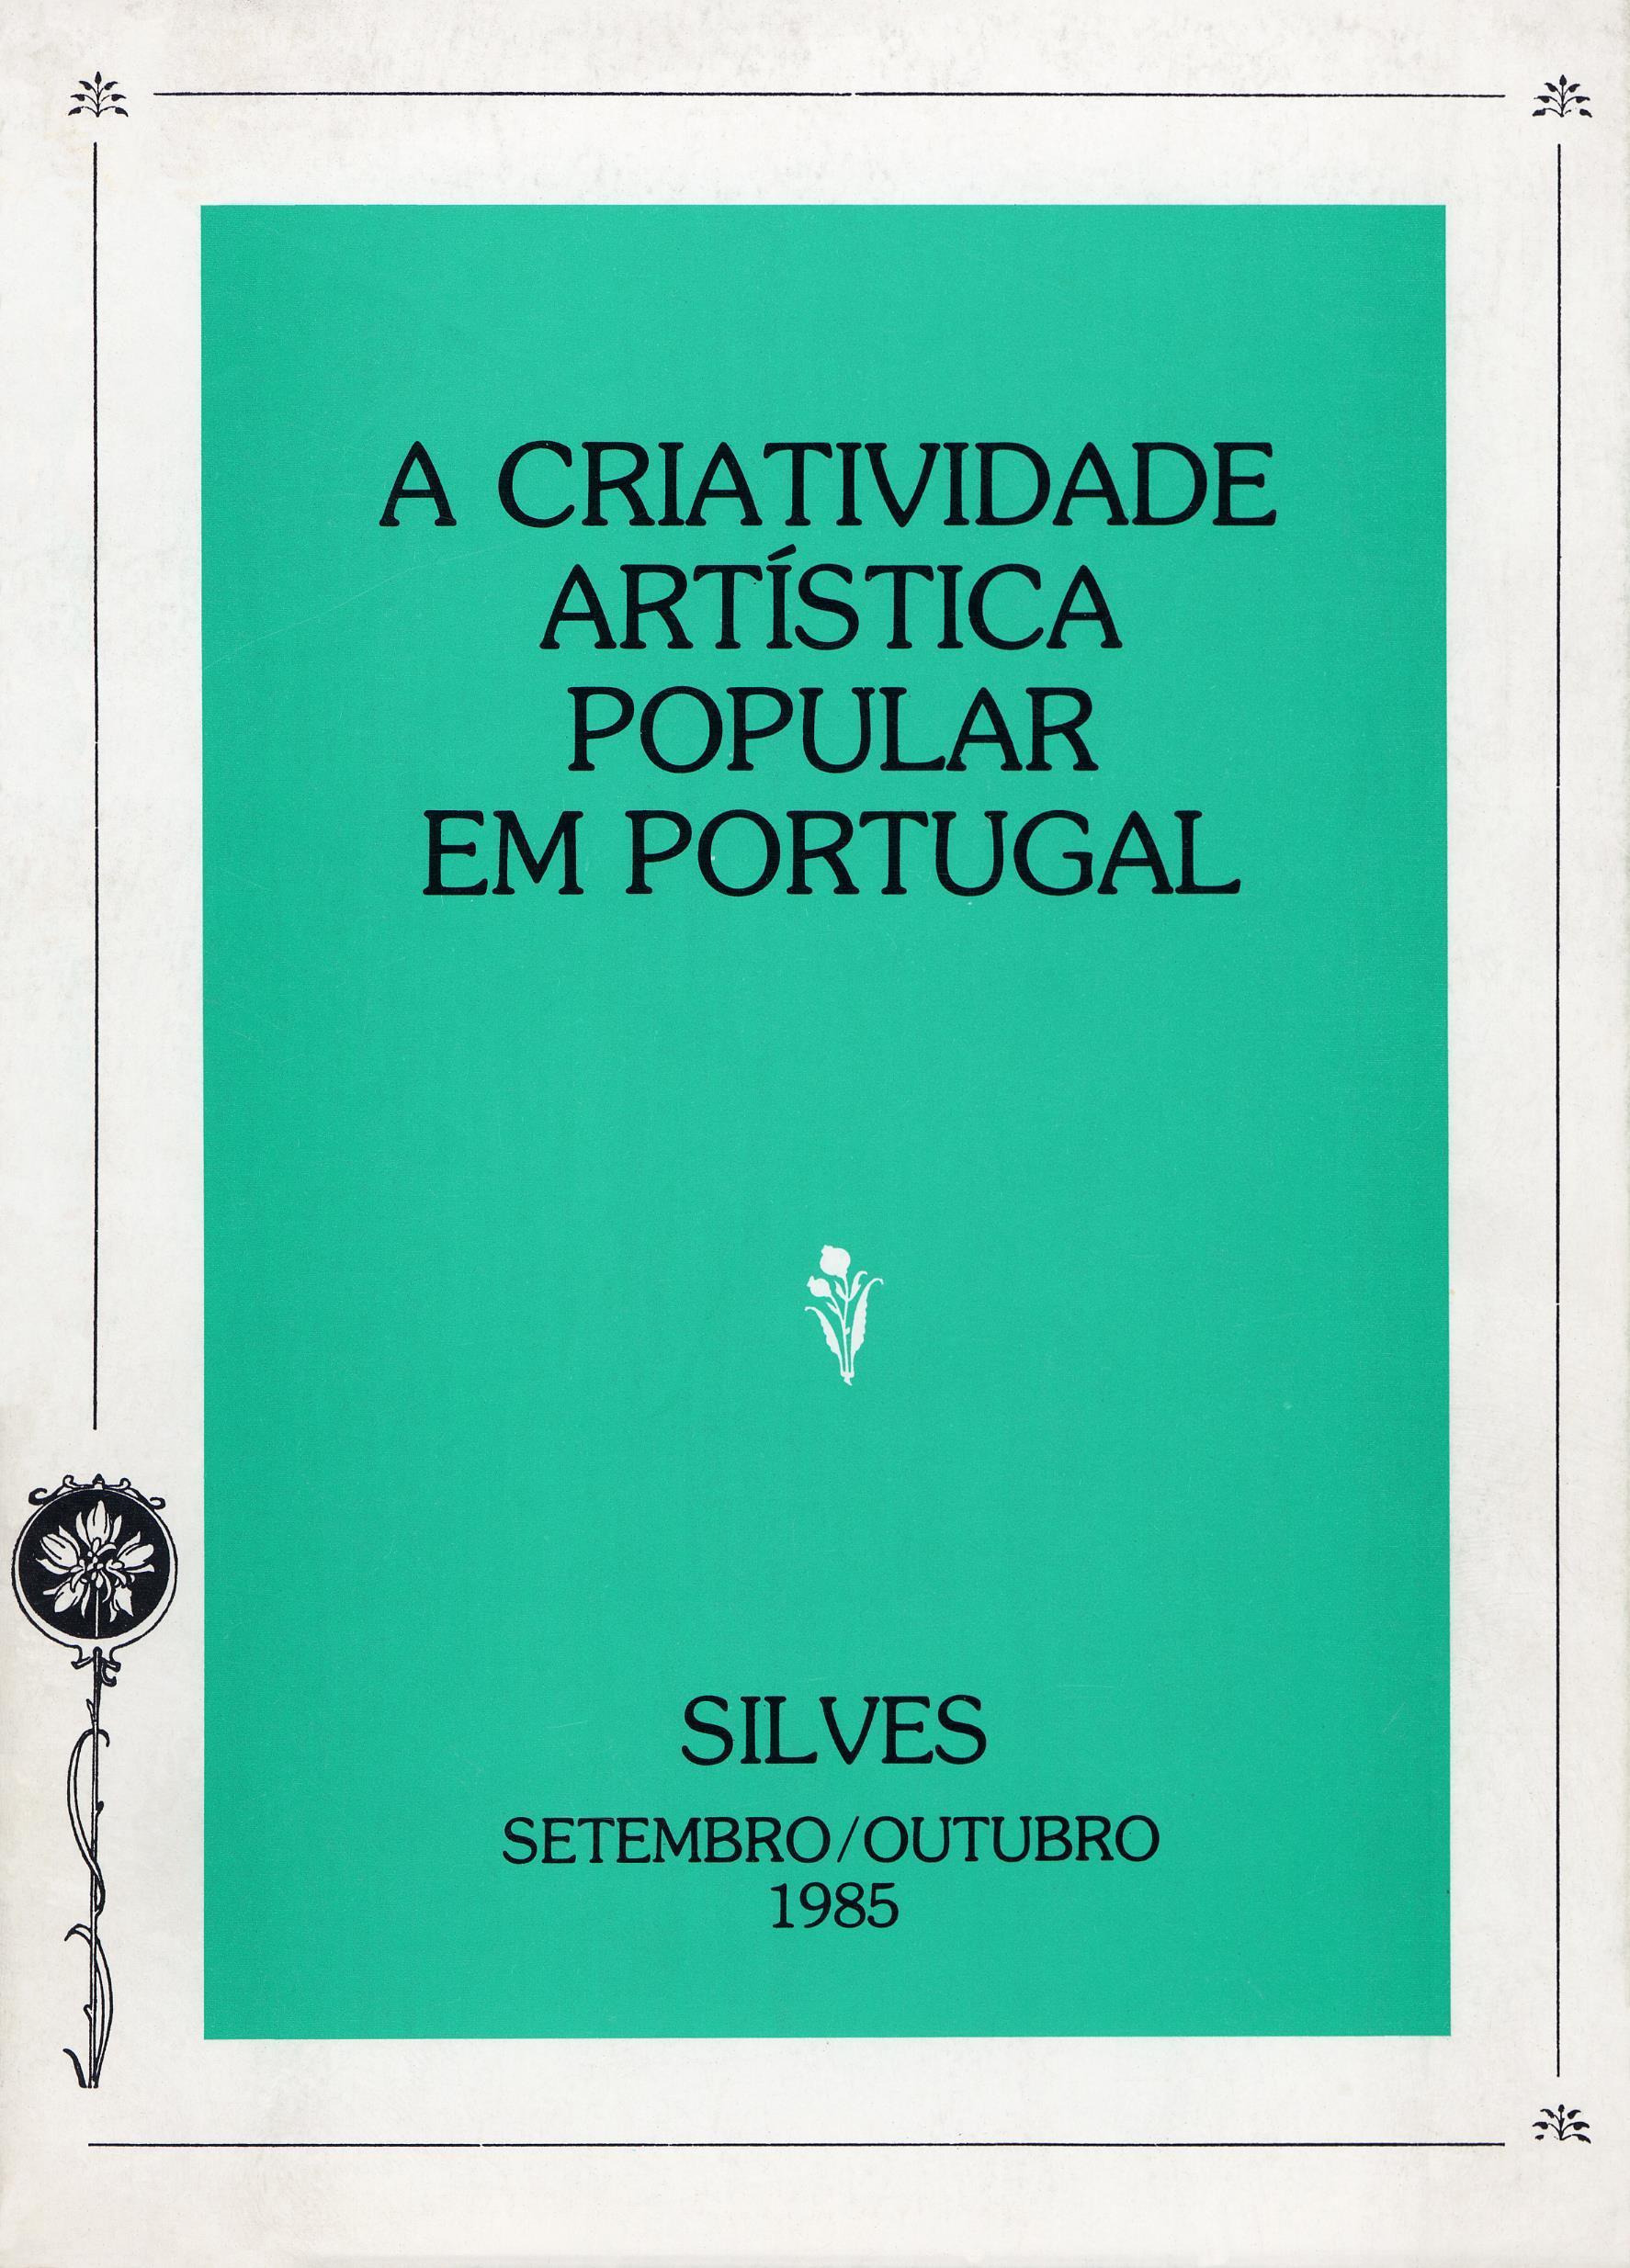 A Criatividade Artística Popular em Portugal